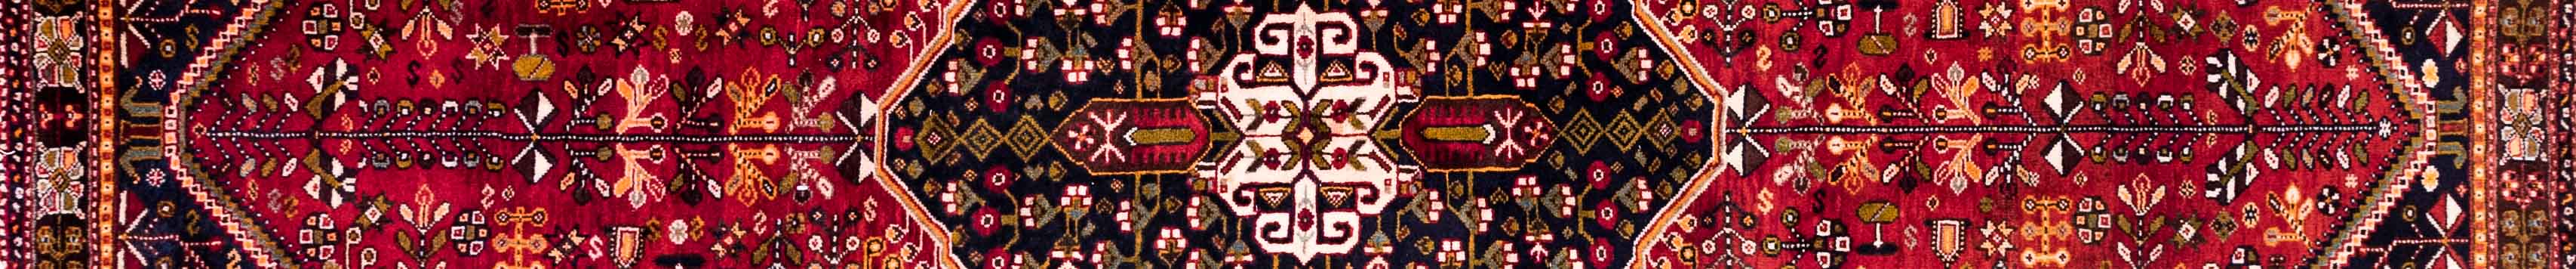 Shiraz Persian Carpet Rug N1Carpet Canada Montreal Tapis Persan 1850